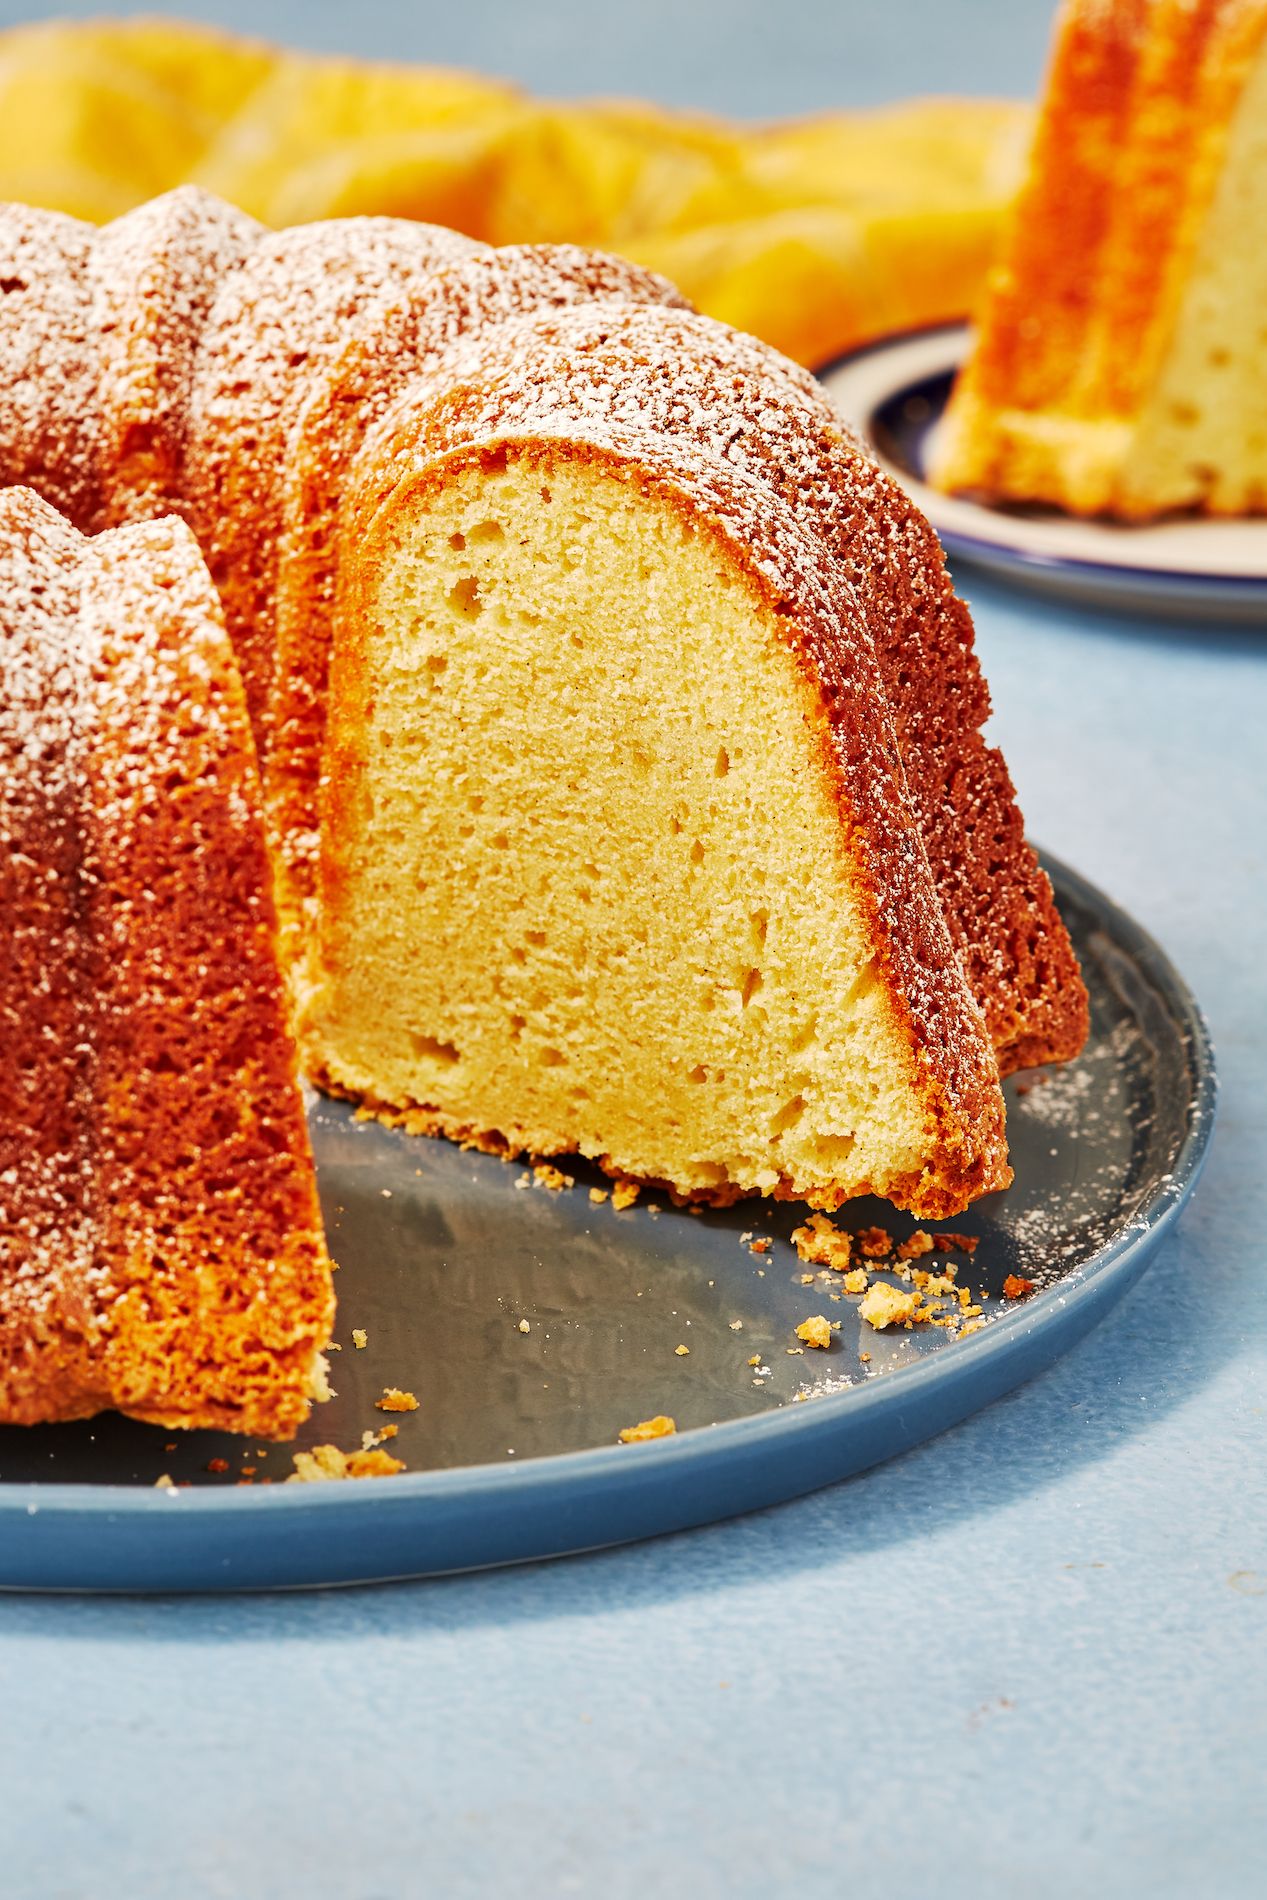 7 POUND CAKE RECIPES you need! How to bake the perfect pound cake | Mansa  Queen 1 hr Baking Marathon - YouTube